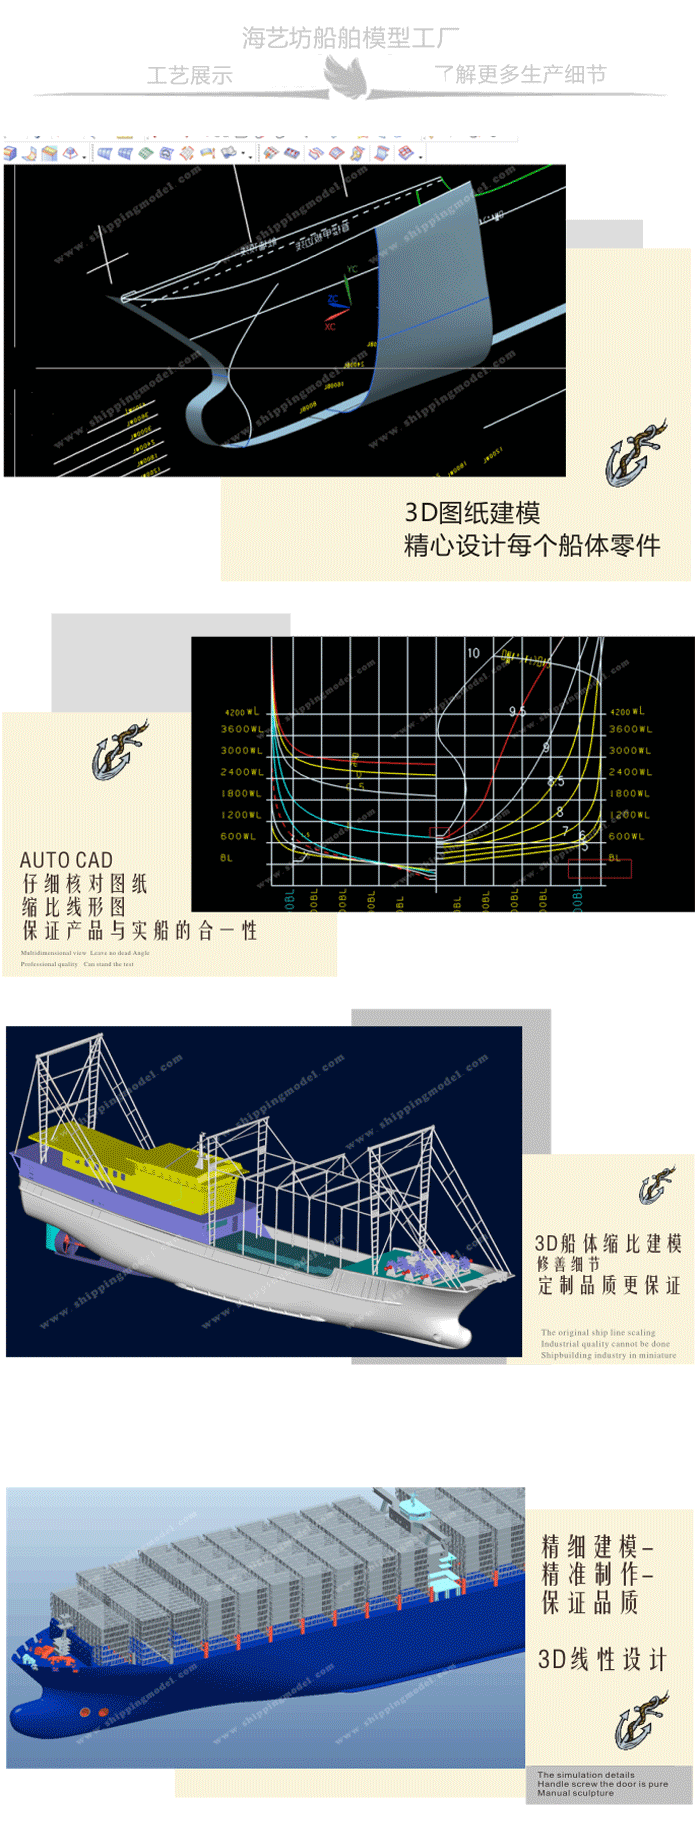 定制船模_40cm巡逻船舶模型定制F_海艺坊模型工厂